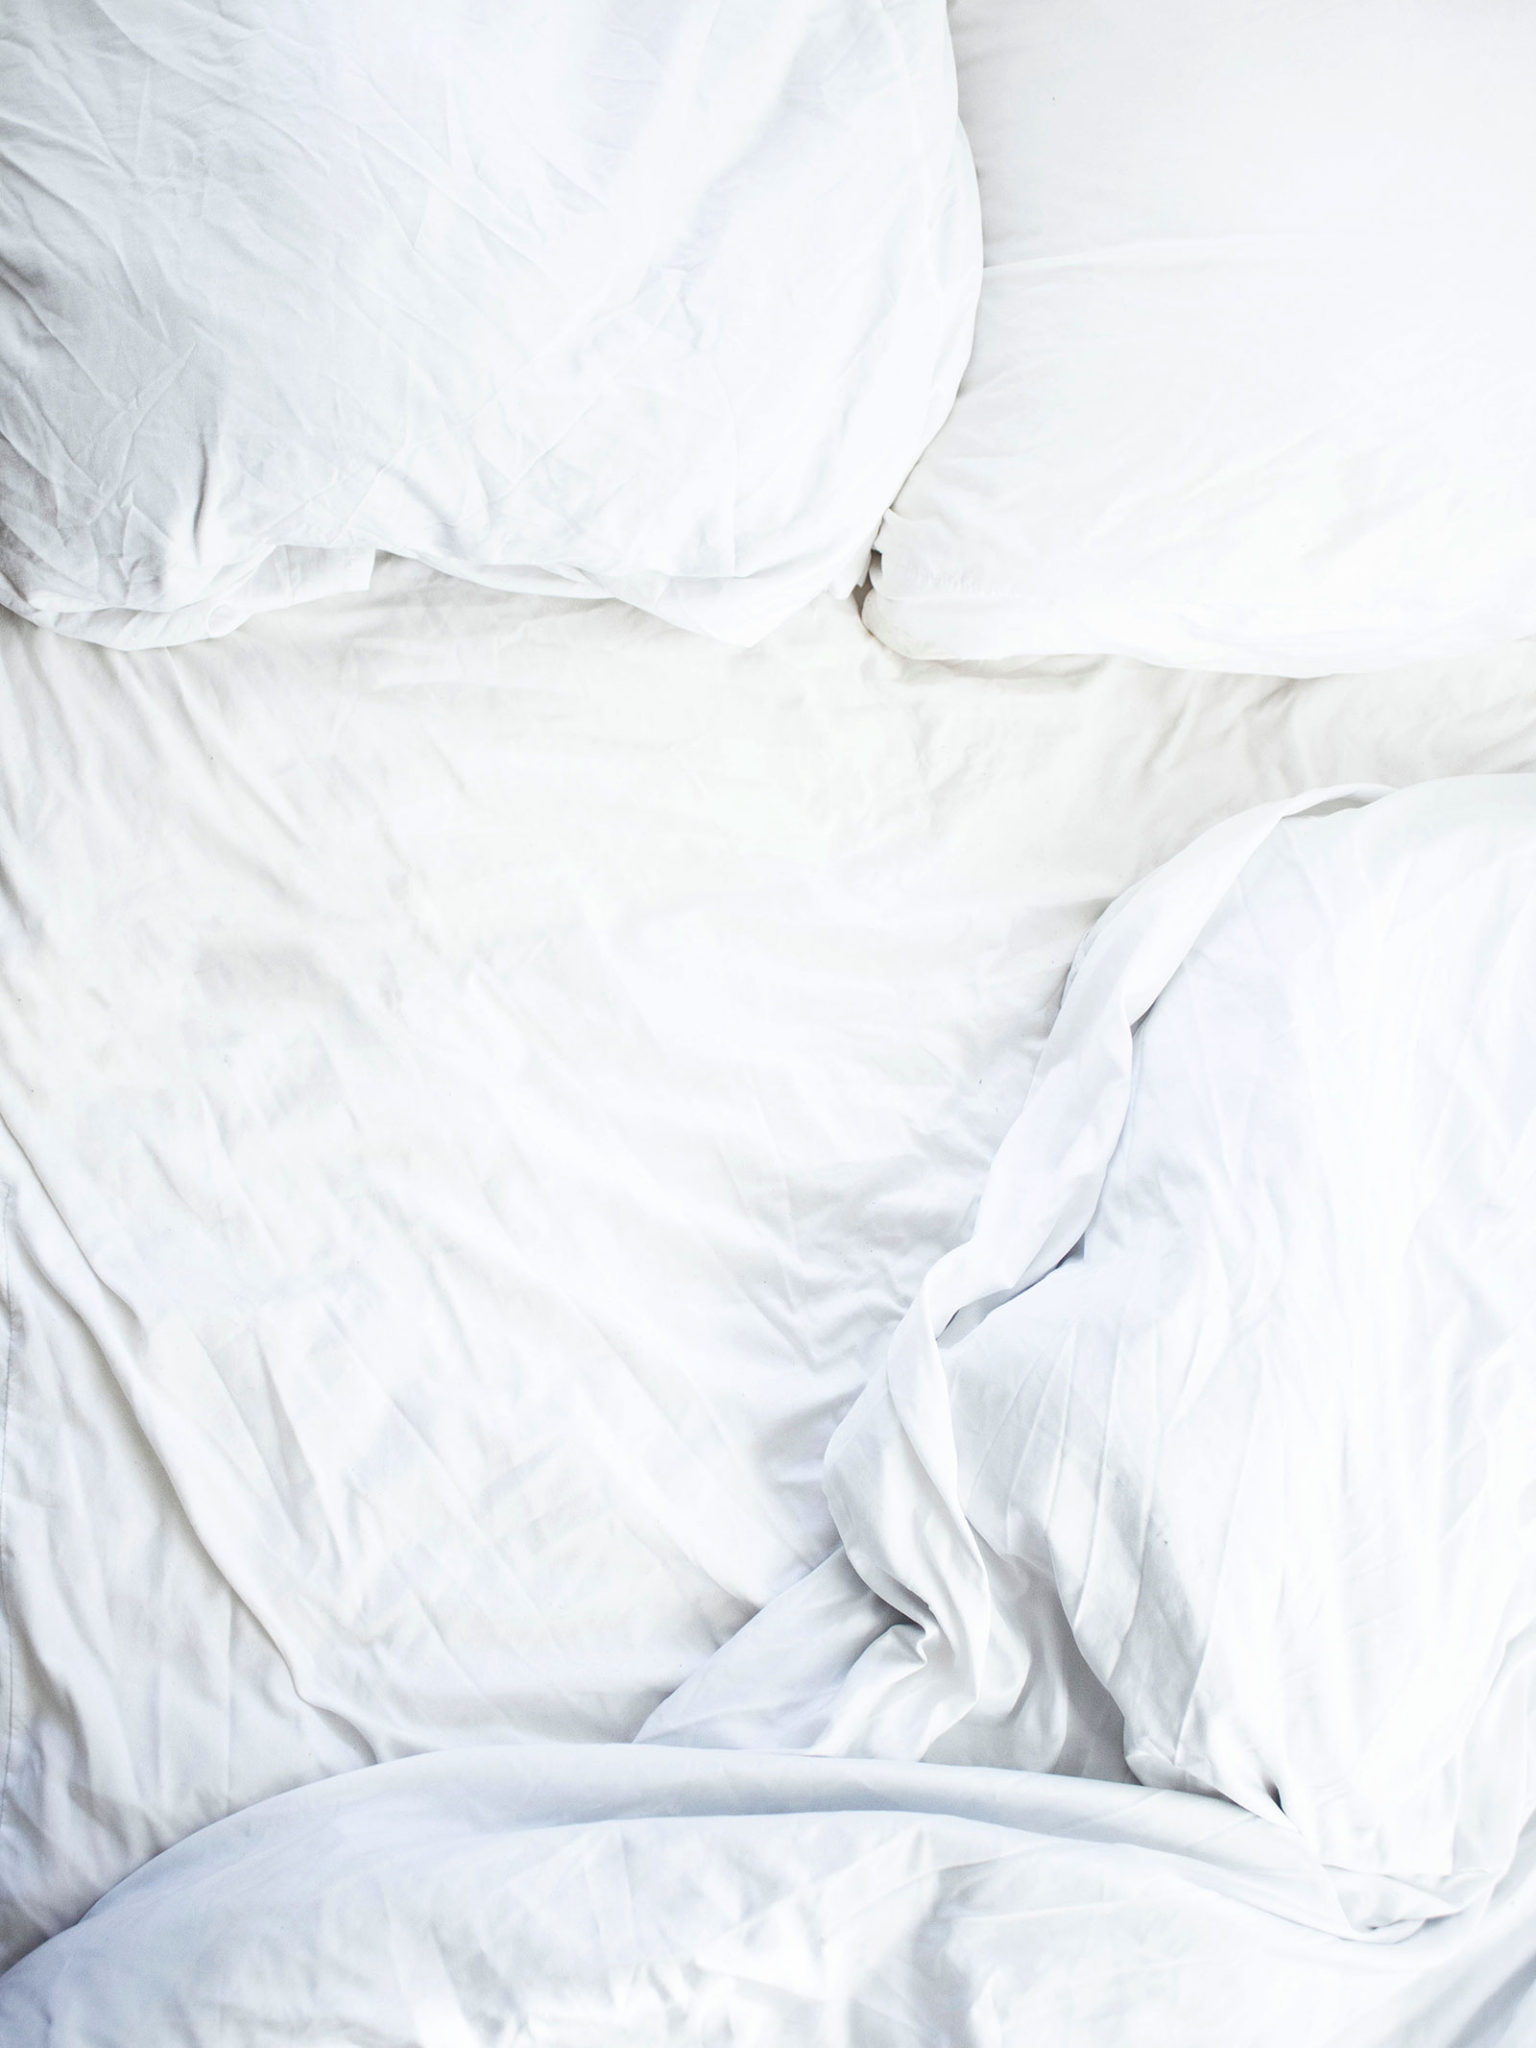 5 Practical Tips For Sleeping Better